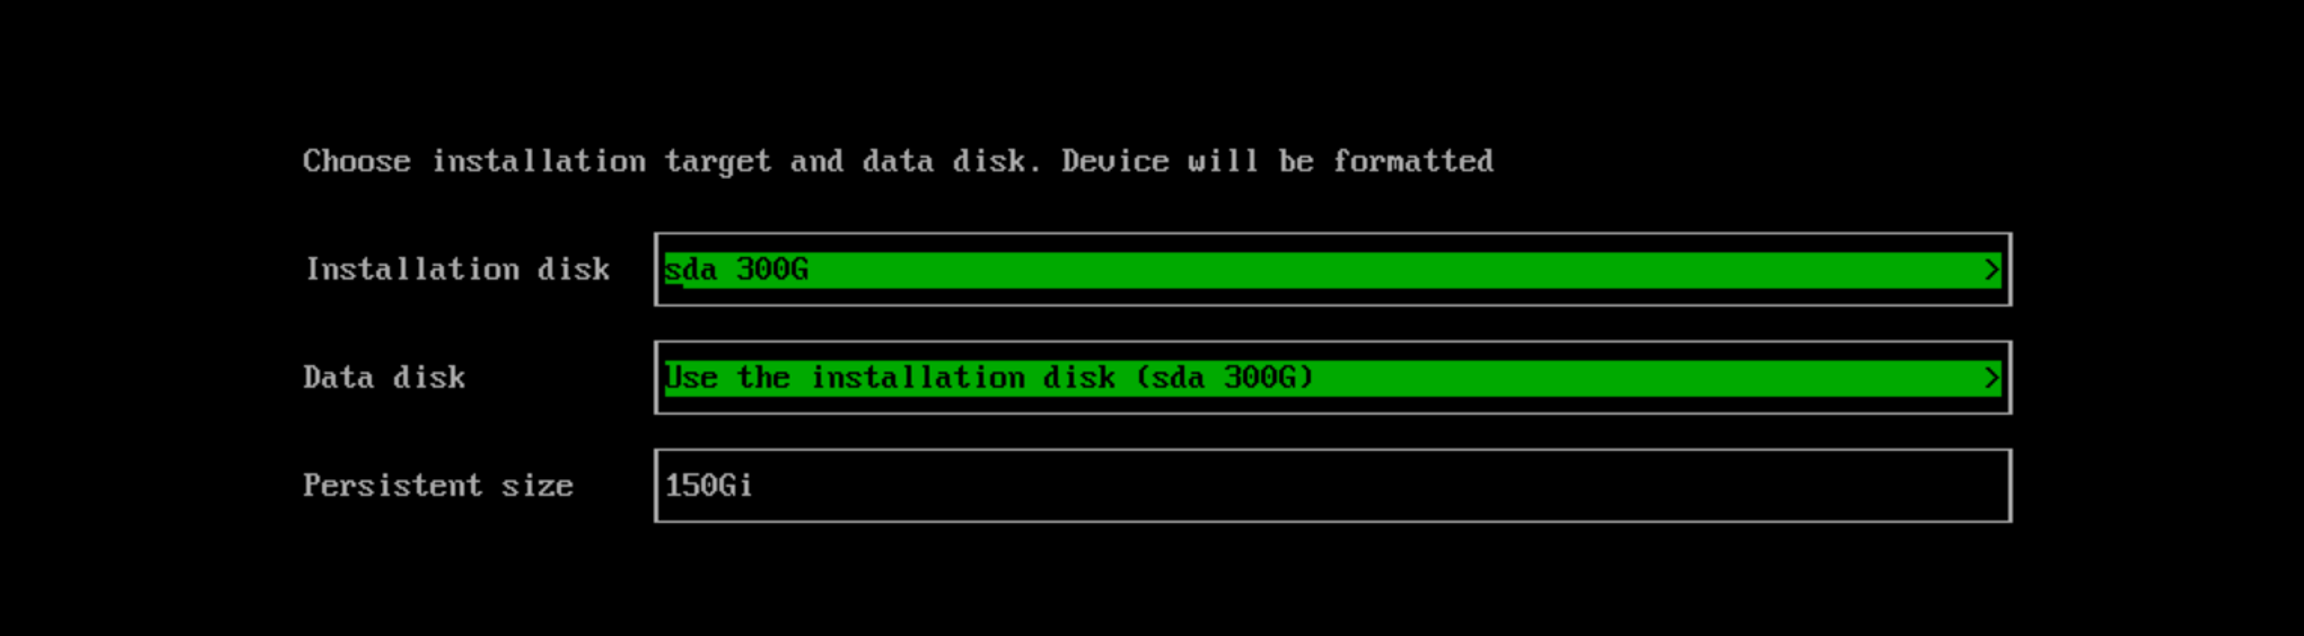 choose-installation-target-data-disk.png